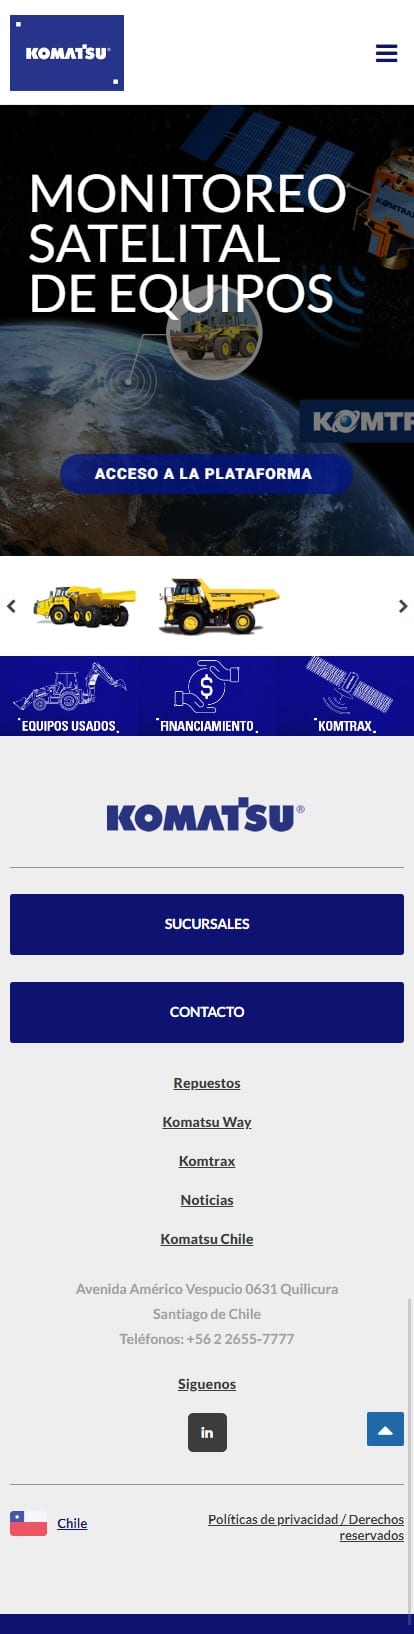 Komatsu Mobile